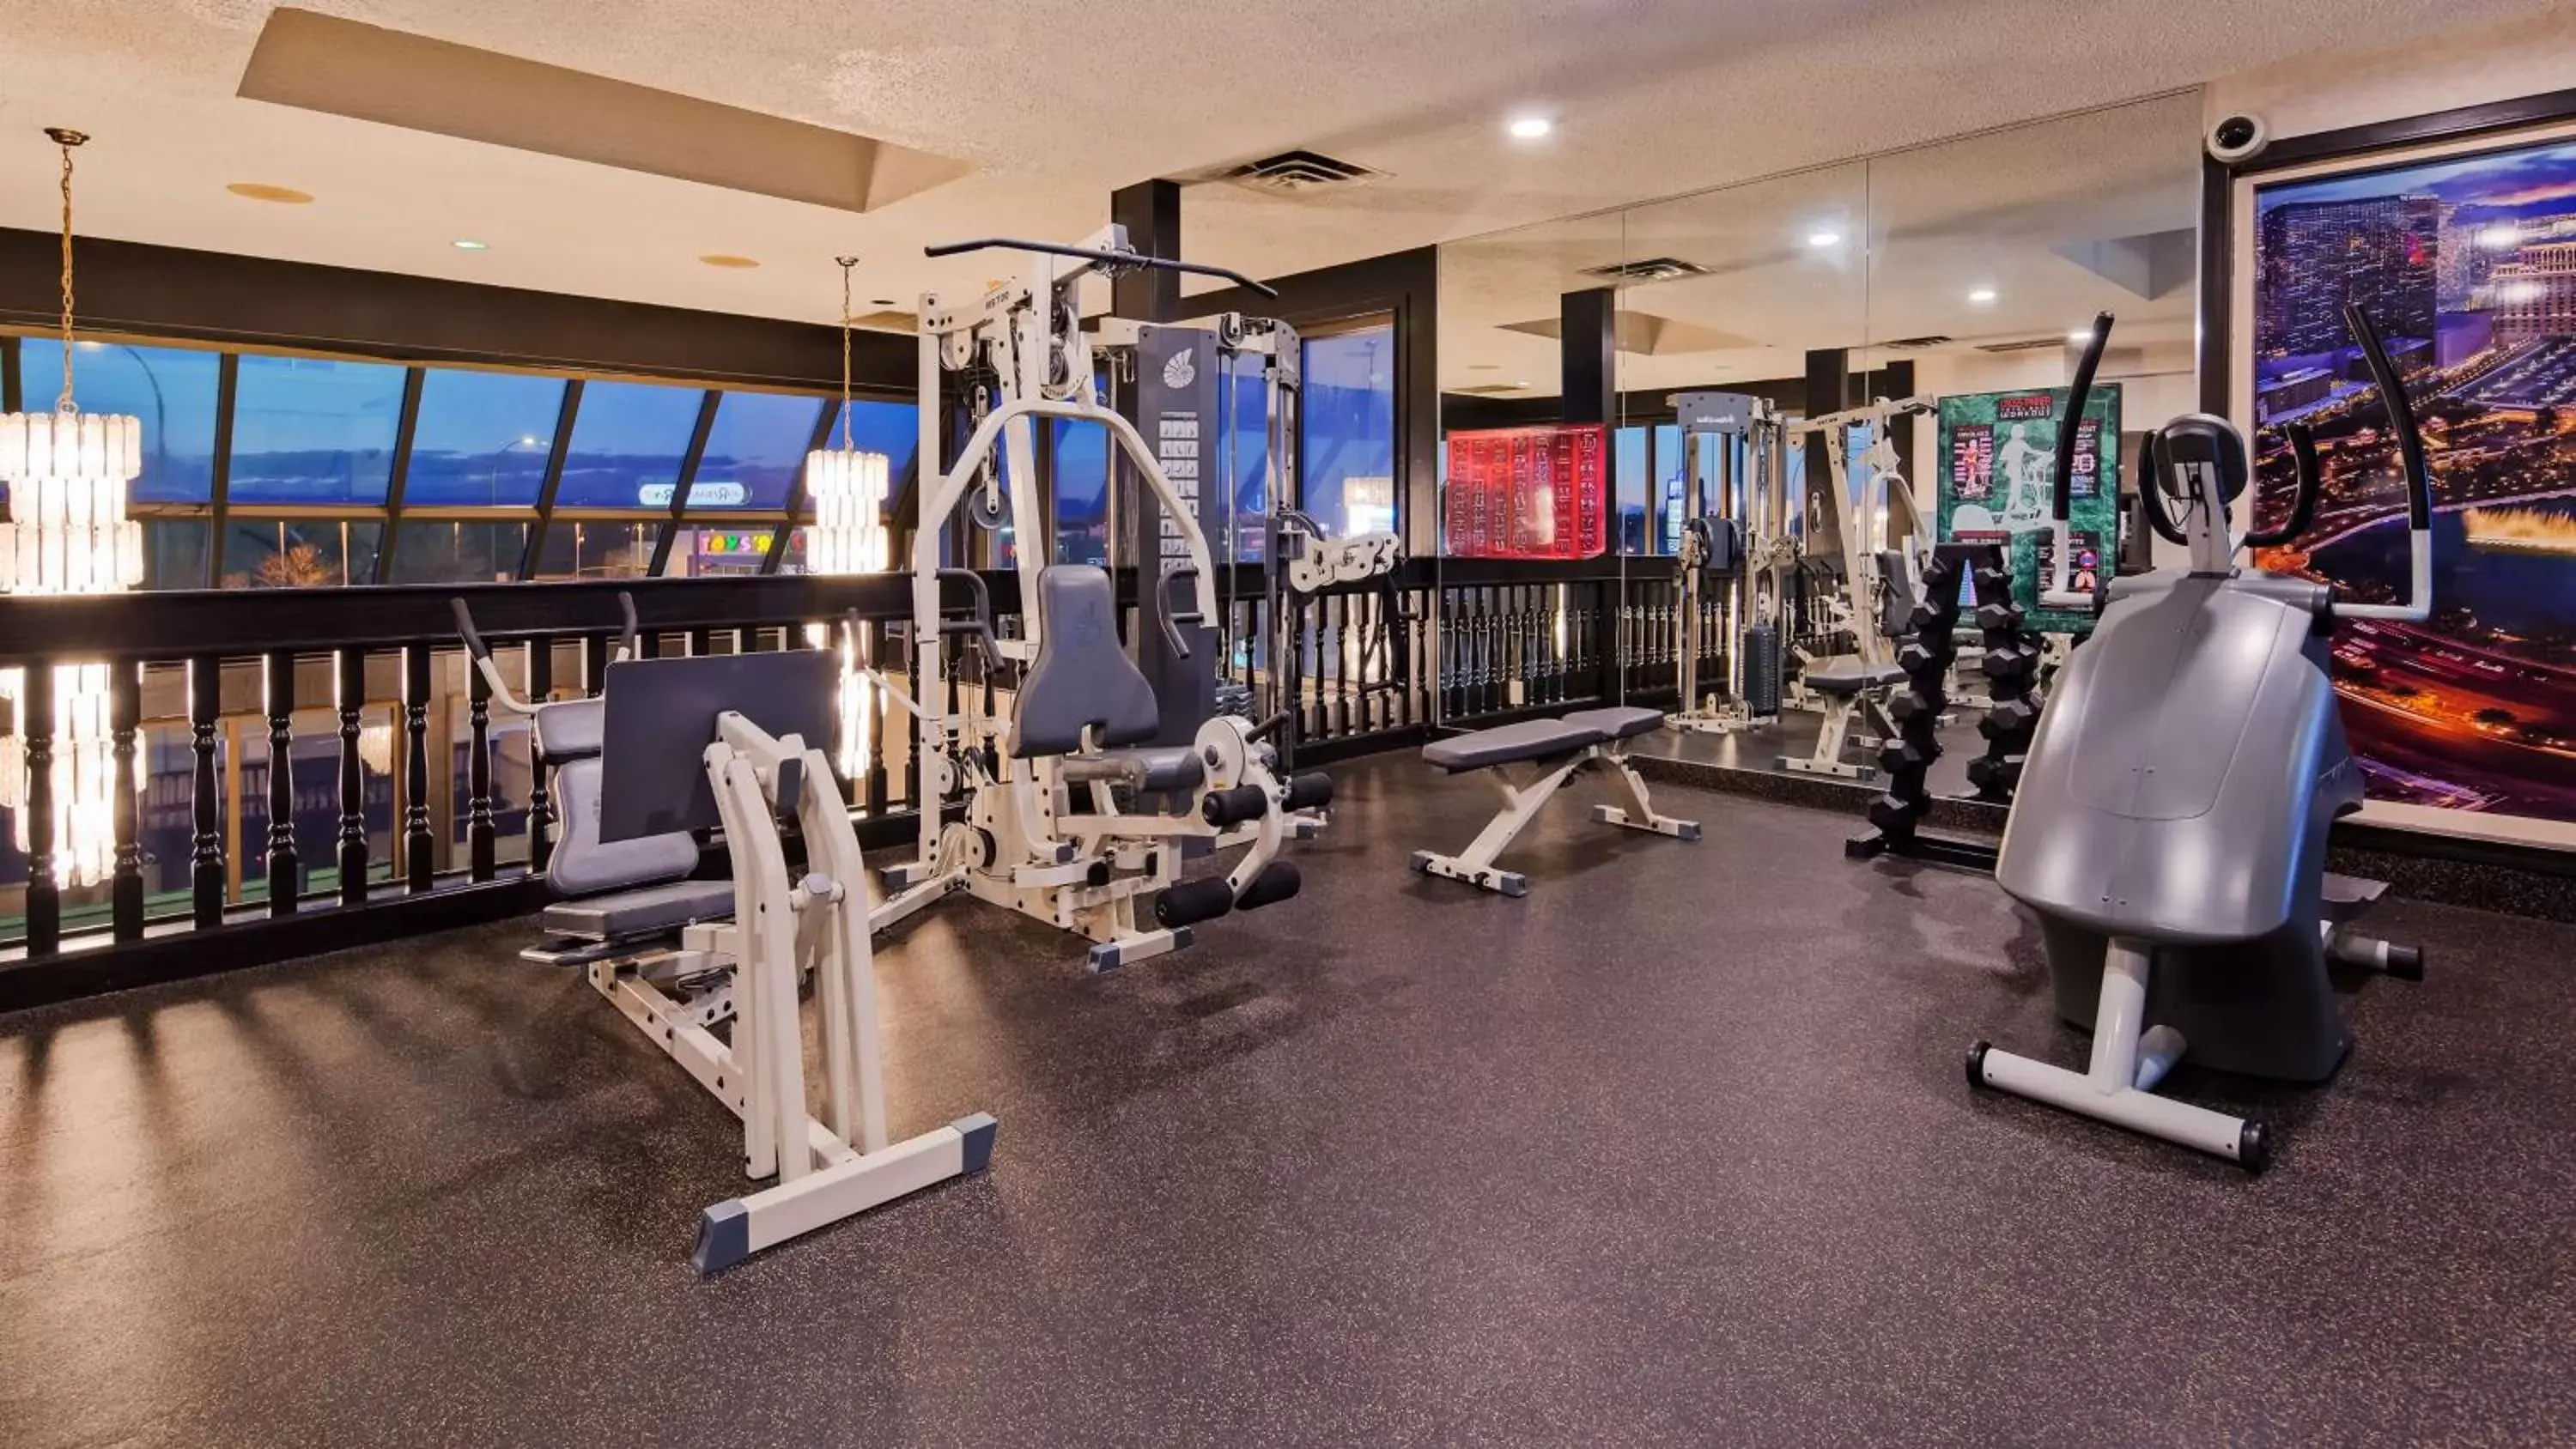 Fitness centre/facilities, Fitness Center/Facilities in Seven Oaks Hotel Regina